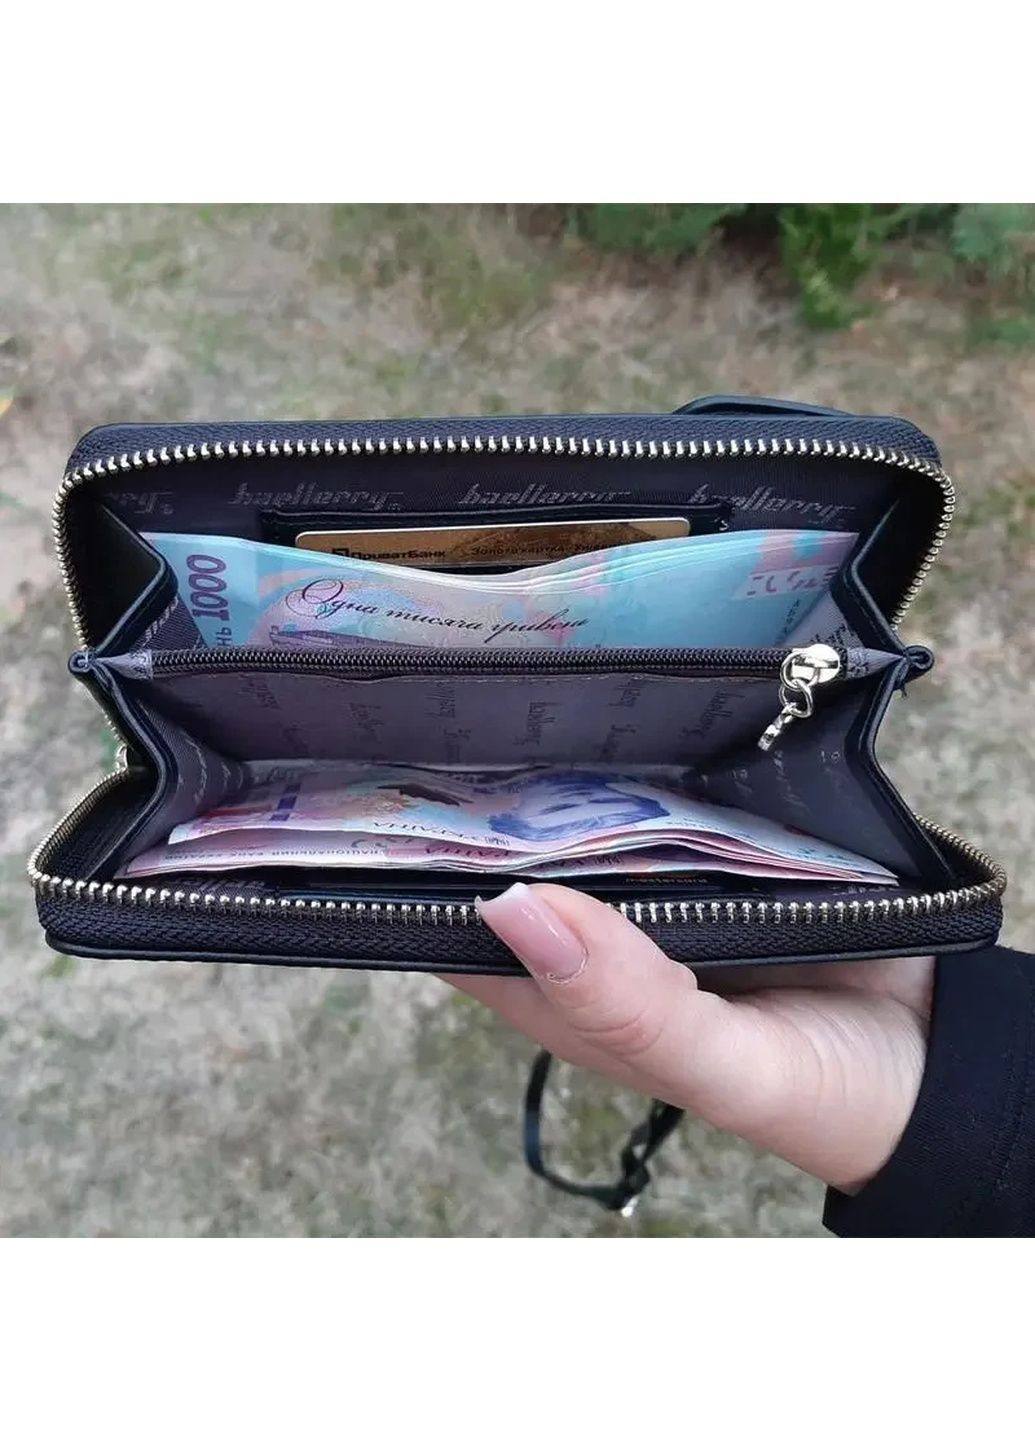 Женская сумка кошелек клатч женский черный, сумка для телефона через плечо FOREVER LOVELY, сумка чехол web No Brand (289870012)